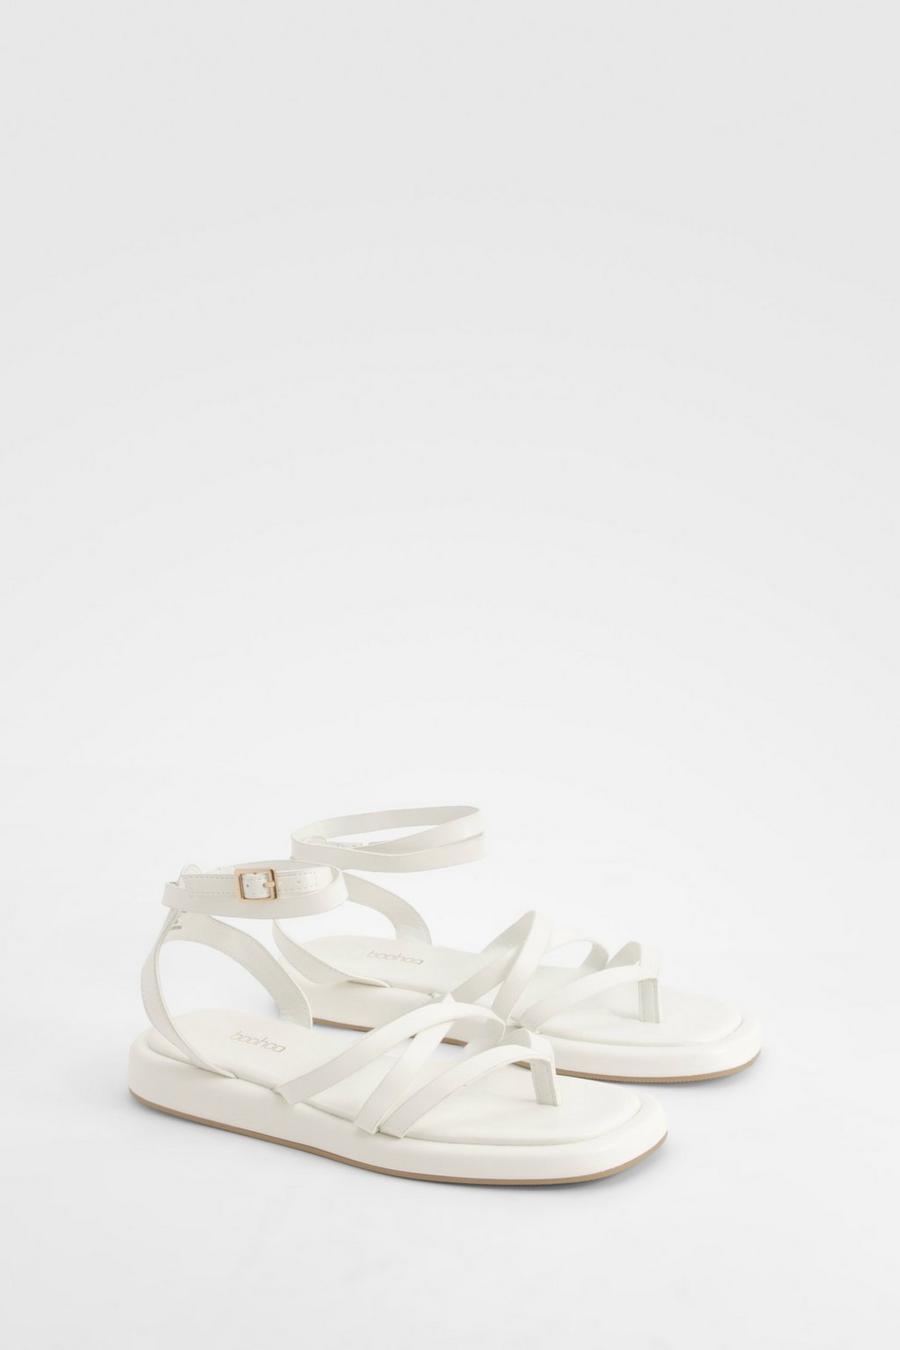 Klobige Sandalen in breiter Passform, White